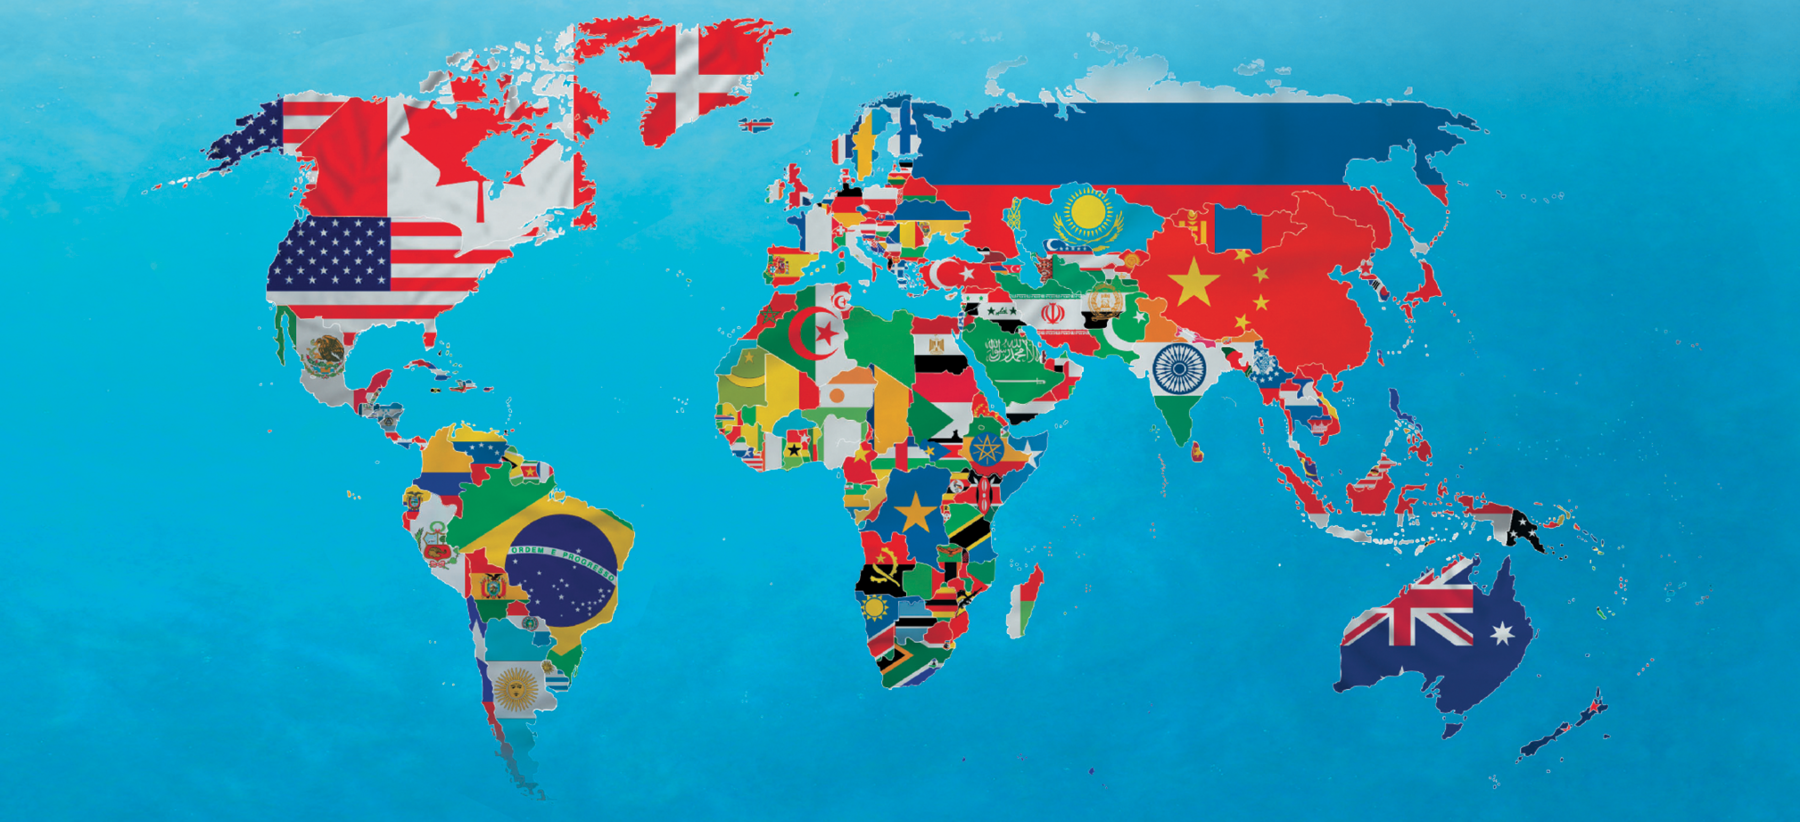 Ilustração. Ilustração do mapa do mundo com os cinco continentes e com a reprodução de partes das bandeiras dos países que os compõem. O oceano está na cor azul. Na América do Norte, predominam as cores branca, vermelha e azul e na América do Sul as cores da bandeira do Brasil (verde, azul e amarelo) e da bandeira da Argentina (azul claro). Na África há muitas cores: ao norte, predominam verde, branco e vermelho das bandeiras da Argélia, Líbia, Egito e Marrocos. Ao centro e ao norte do continente africano, há verde, amarelo, vermelho, azul, preto e branco. Na Eurásia, predominam azul, vermelho, amarelo, branco e verde. Na Oceania, azul vermelho e branco.